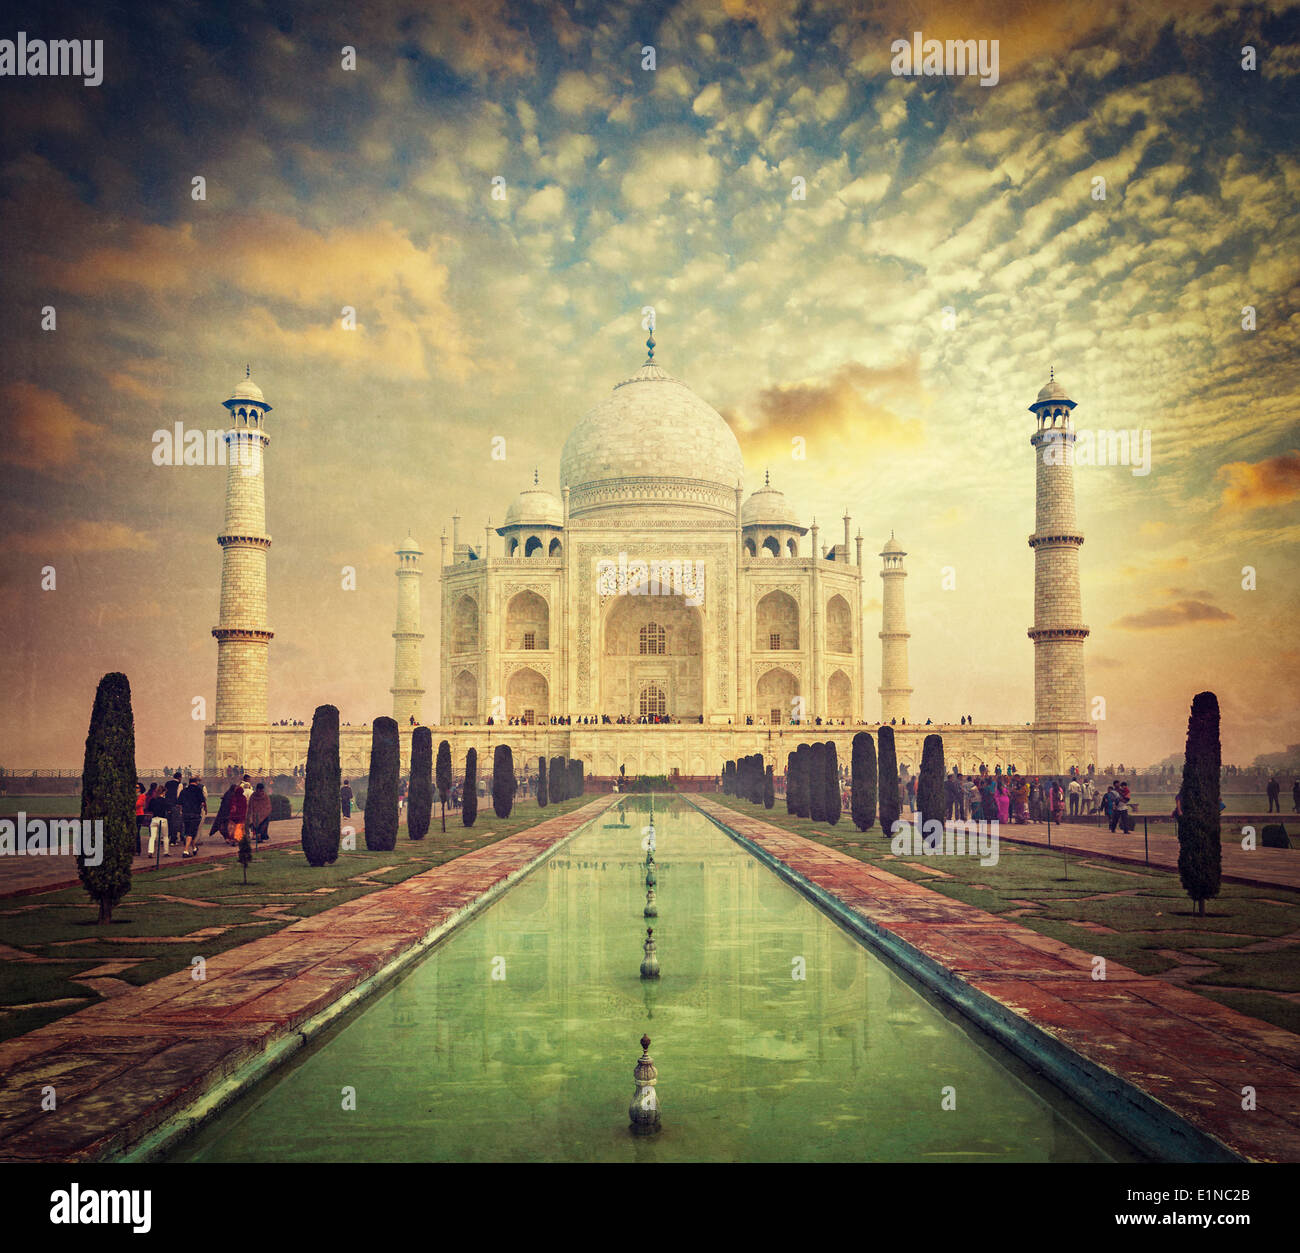 Taj Mahal auf Sonnenaufgang Sonnenuntergang, indischen Symbol - Indien Reisen Hintergrund. Agra, Uttar Pradesh, Indien. Retro Vintage Hipster-Stil Stockfoto